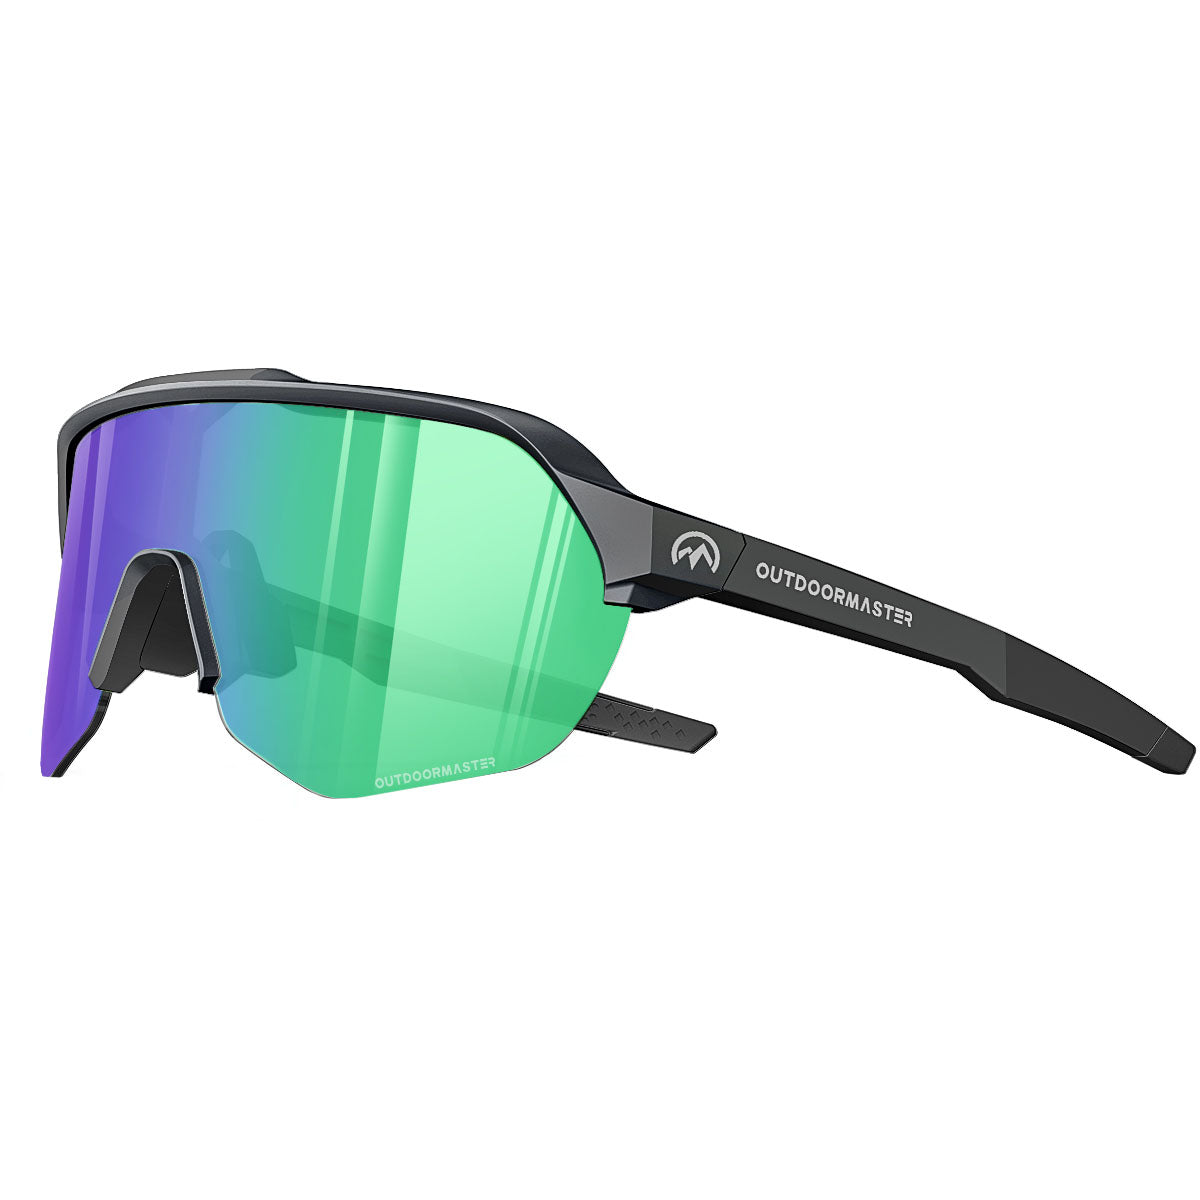 https://cdn.shopify.com/s/files/1/0330/6389/5085/files/Color-Enhancing-Sunglasses-Green-Vlt11.jpg?v=1687847606